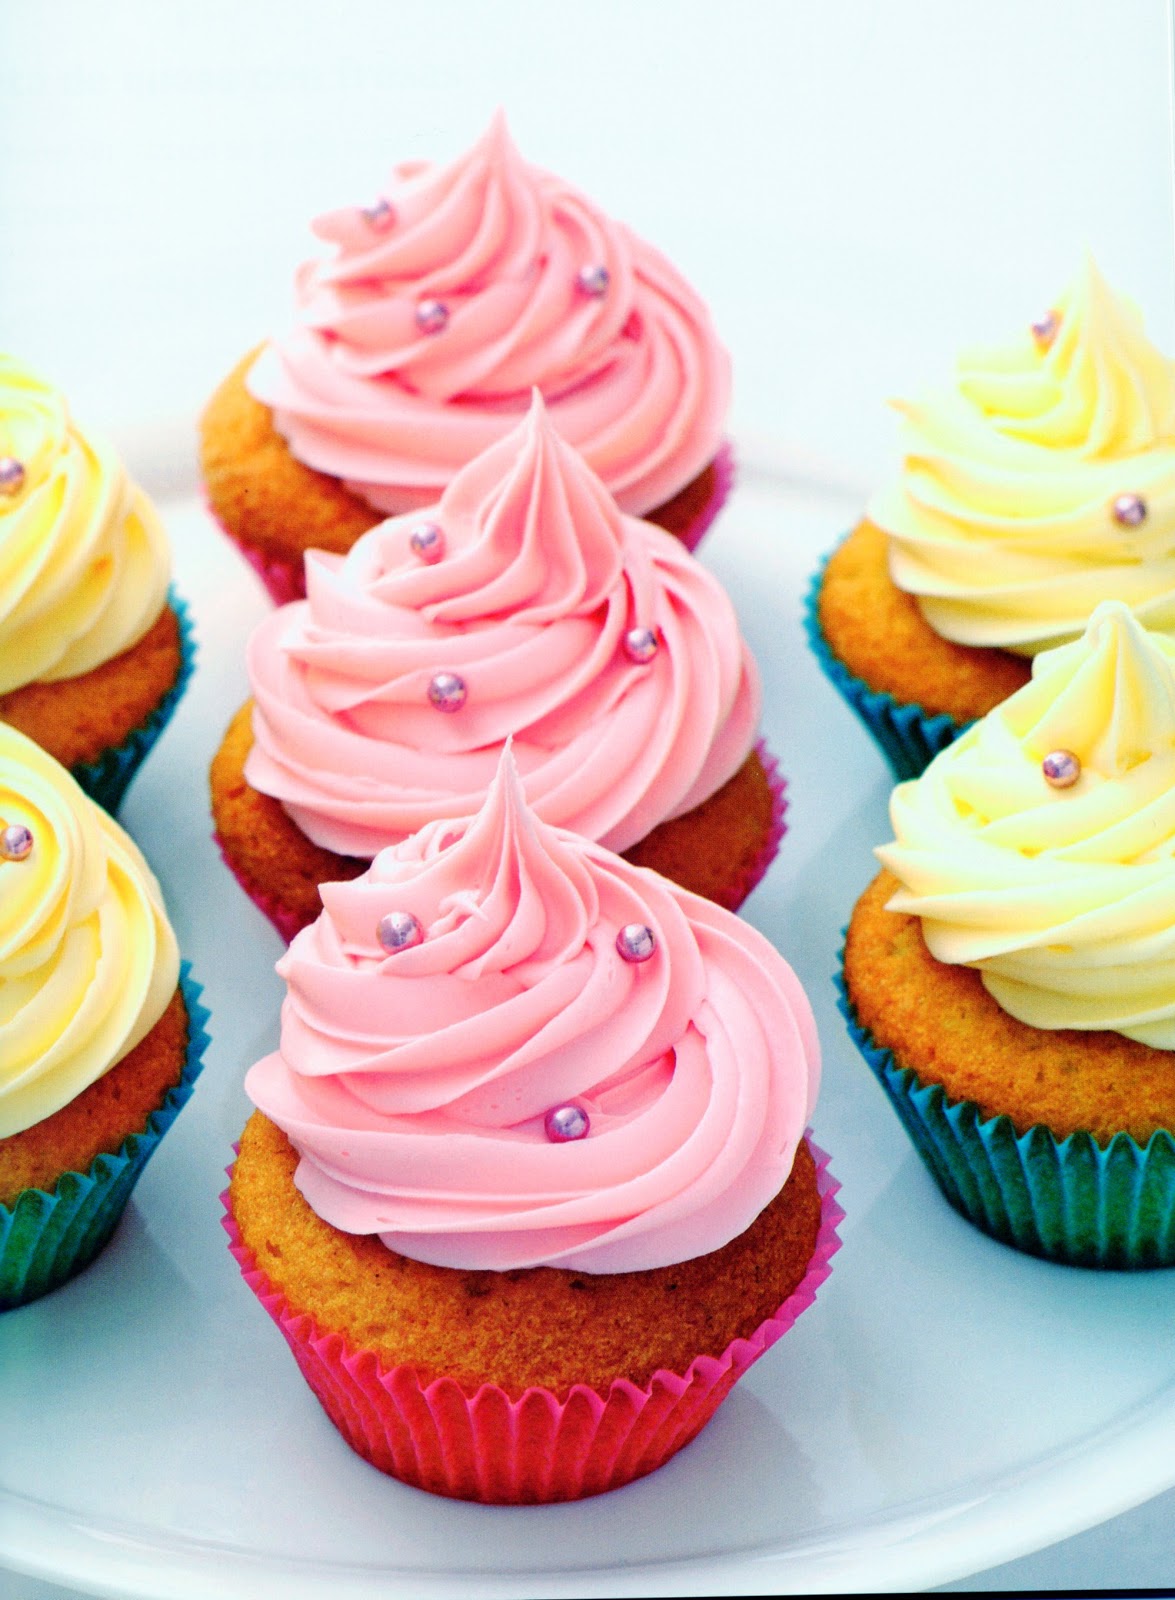 RECETAS DE REPOSTERIA UTILES: Recetas para cupcakes